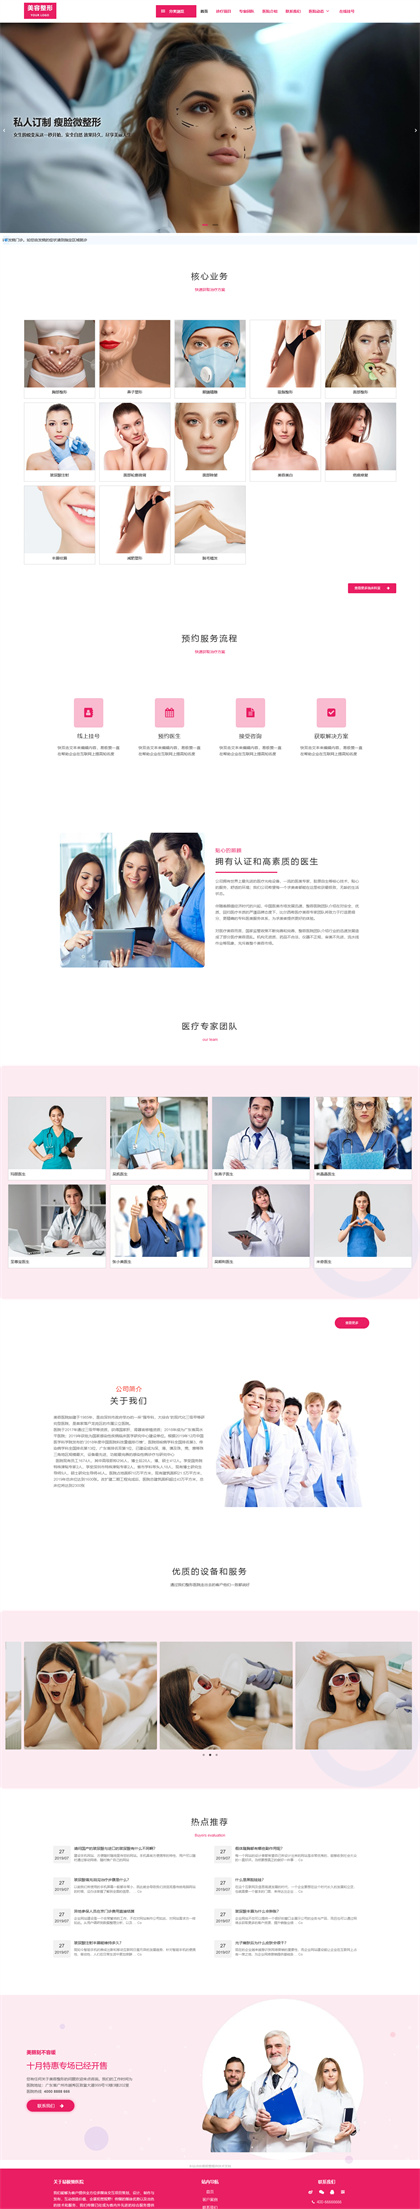 医疗美容-整形医院-整容医院-整容机构-医美加盟-中韩整形-网站模板网站模板图片